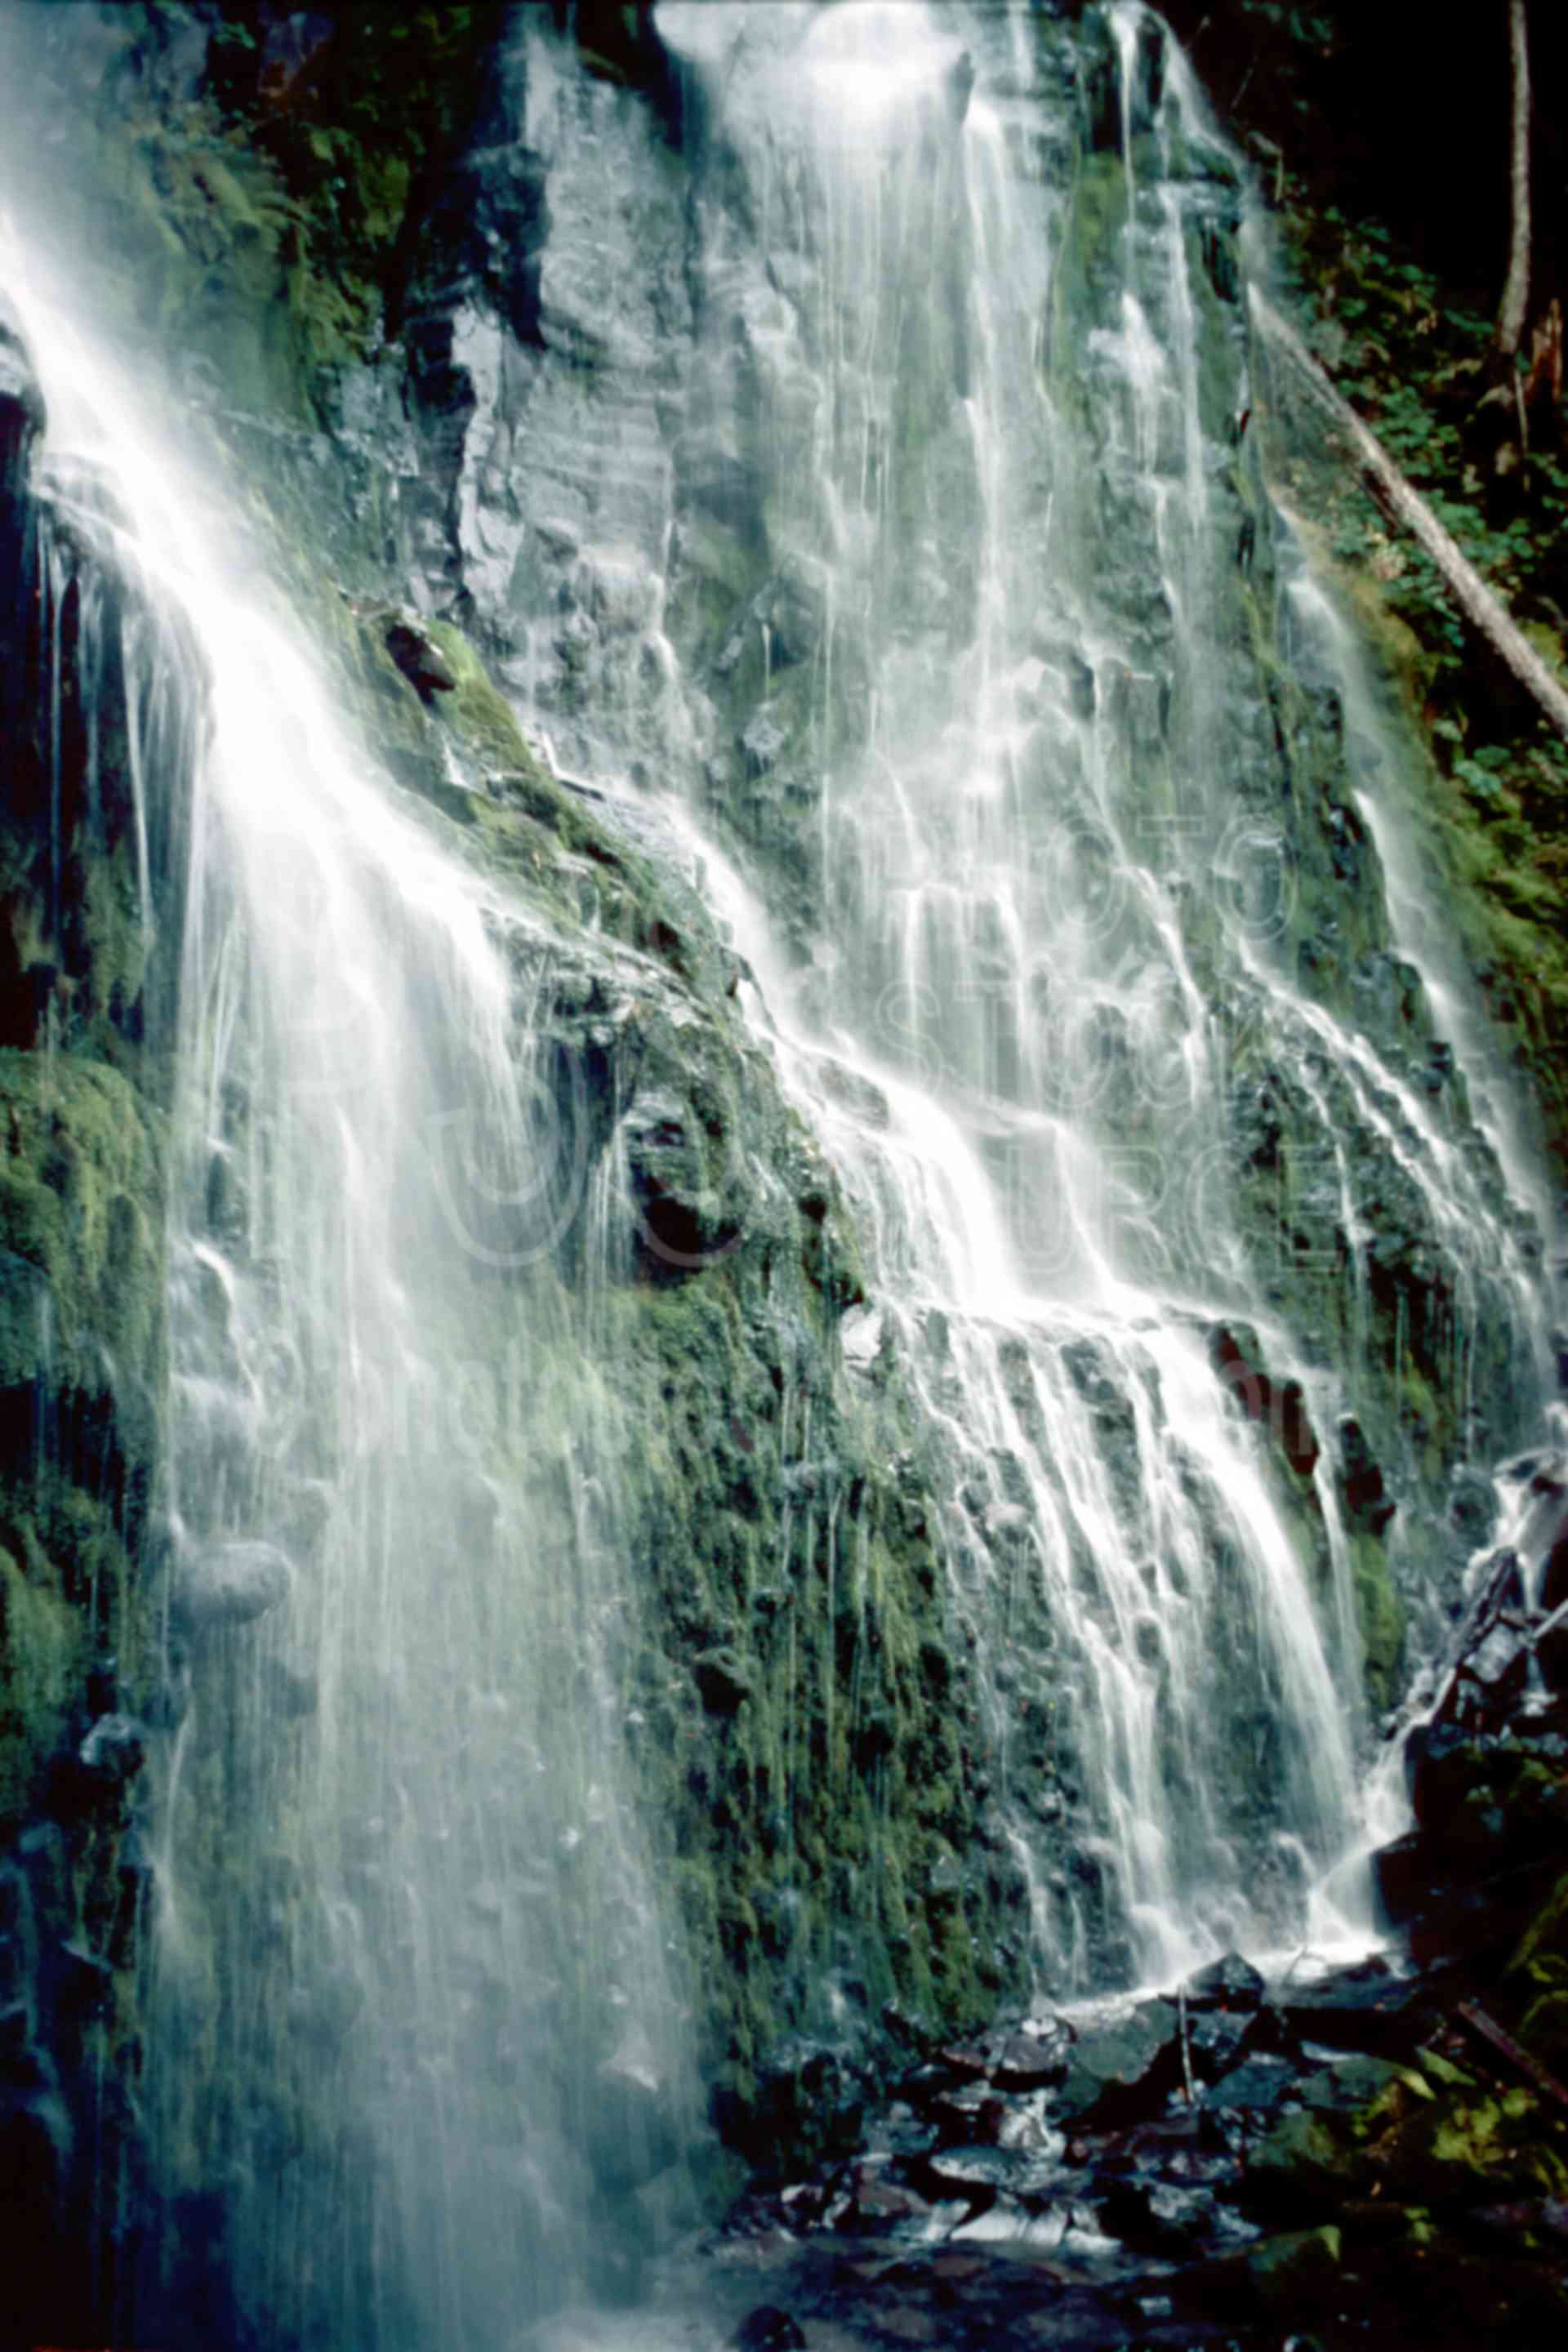 Lower Proxy Falls,falls,water,usas,nature,waterfalls